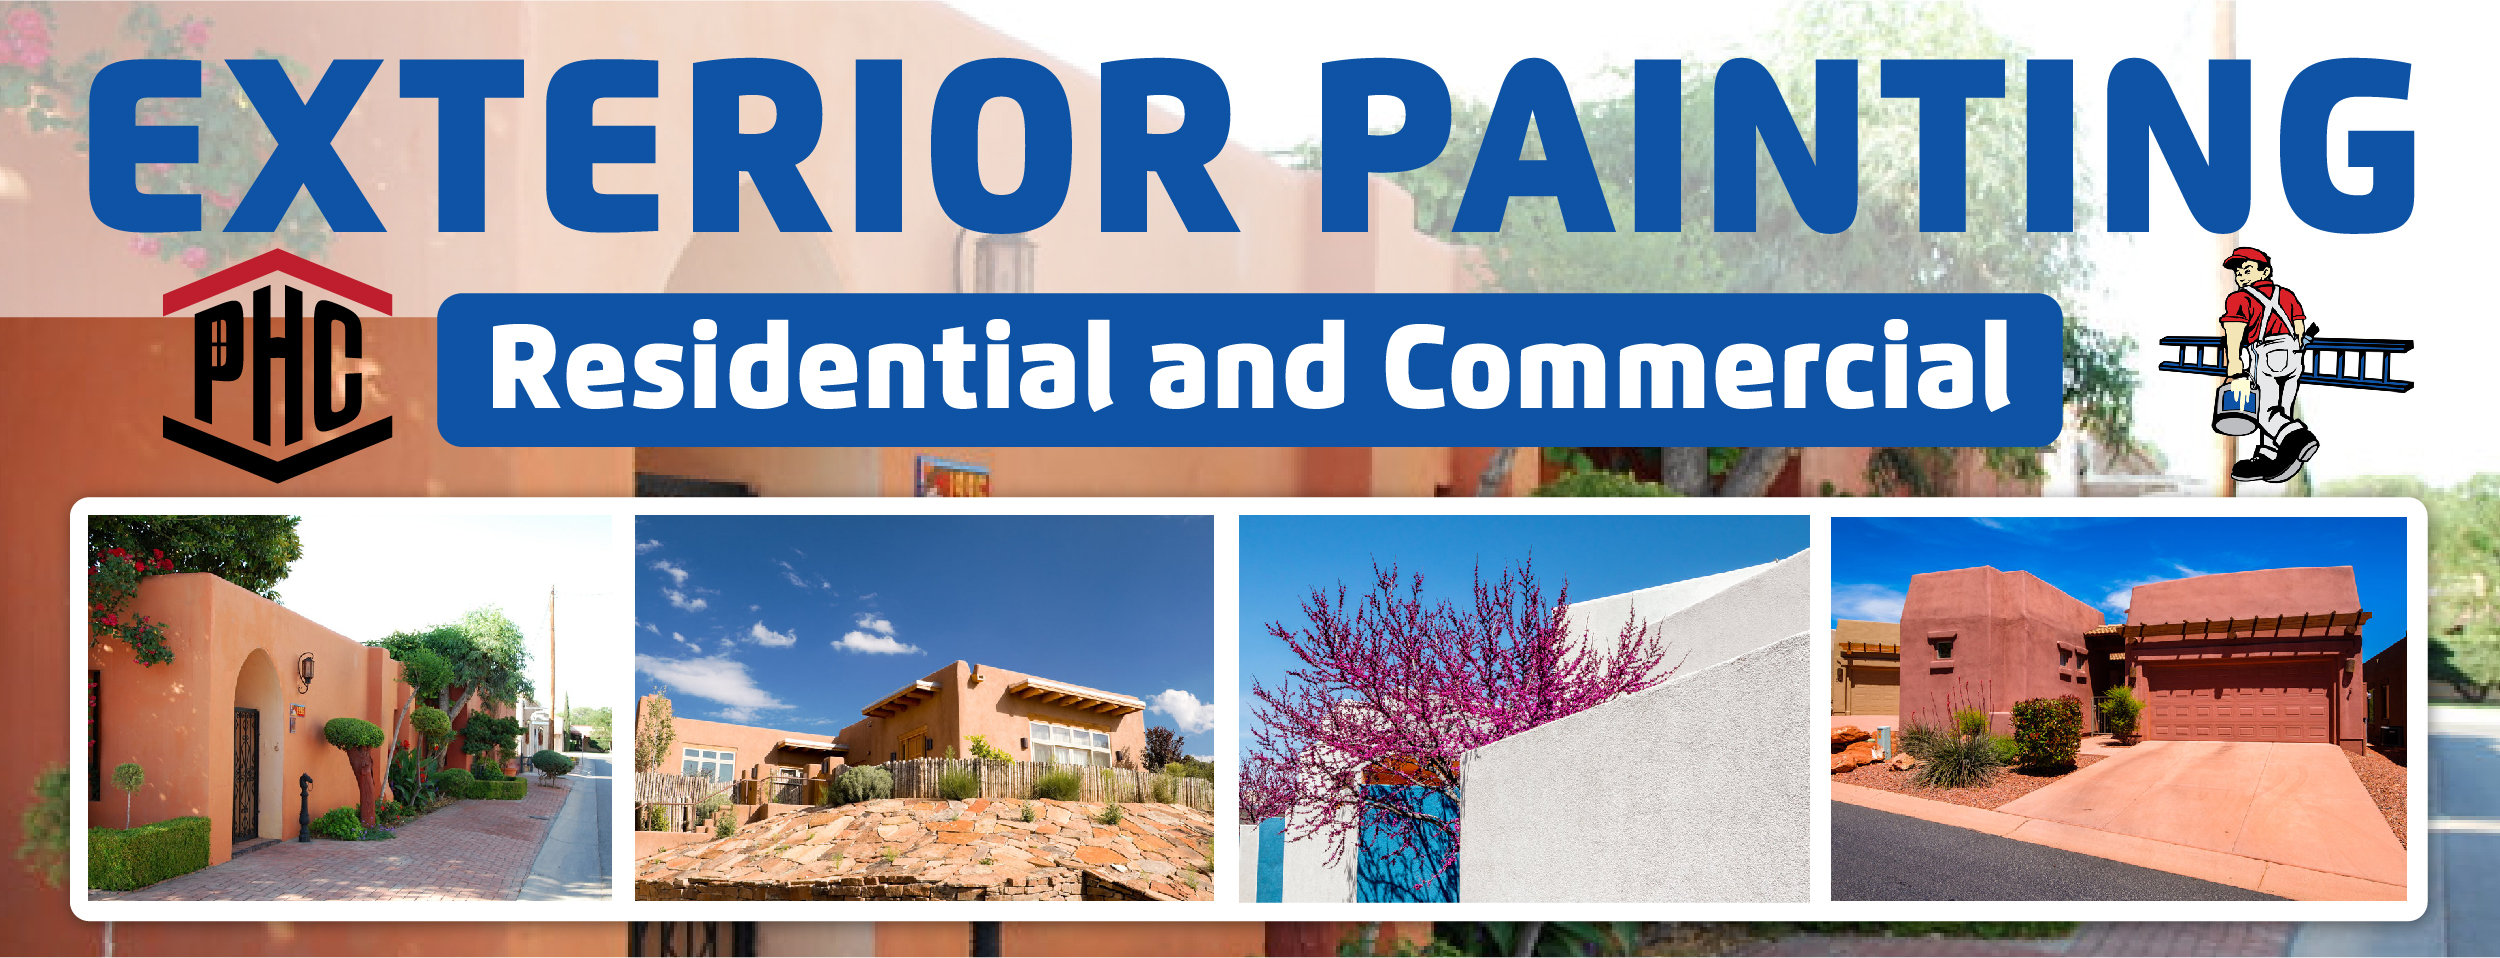 lowest price exterior painting Albuquerque NM